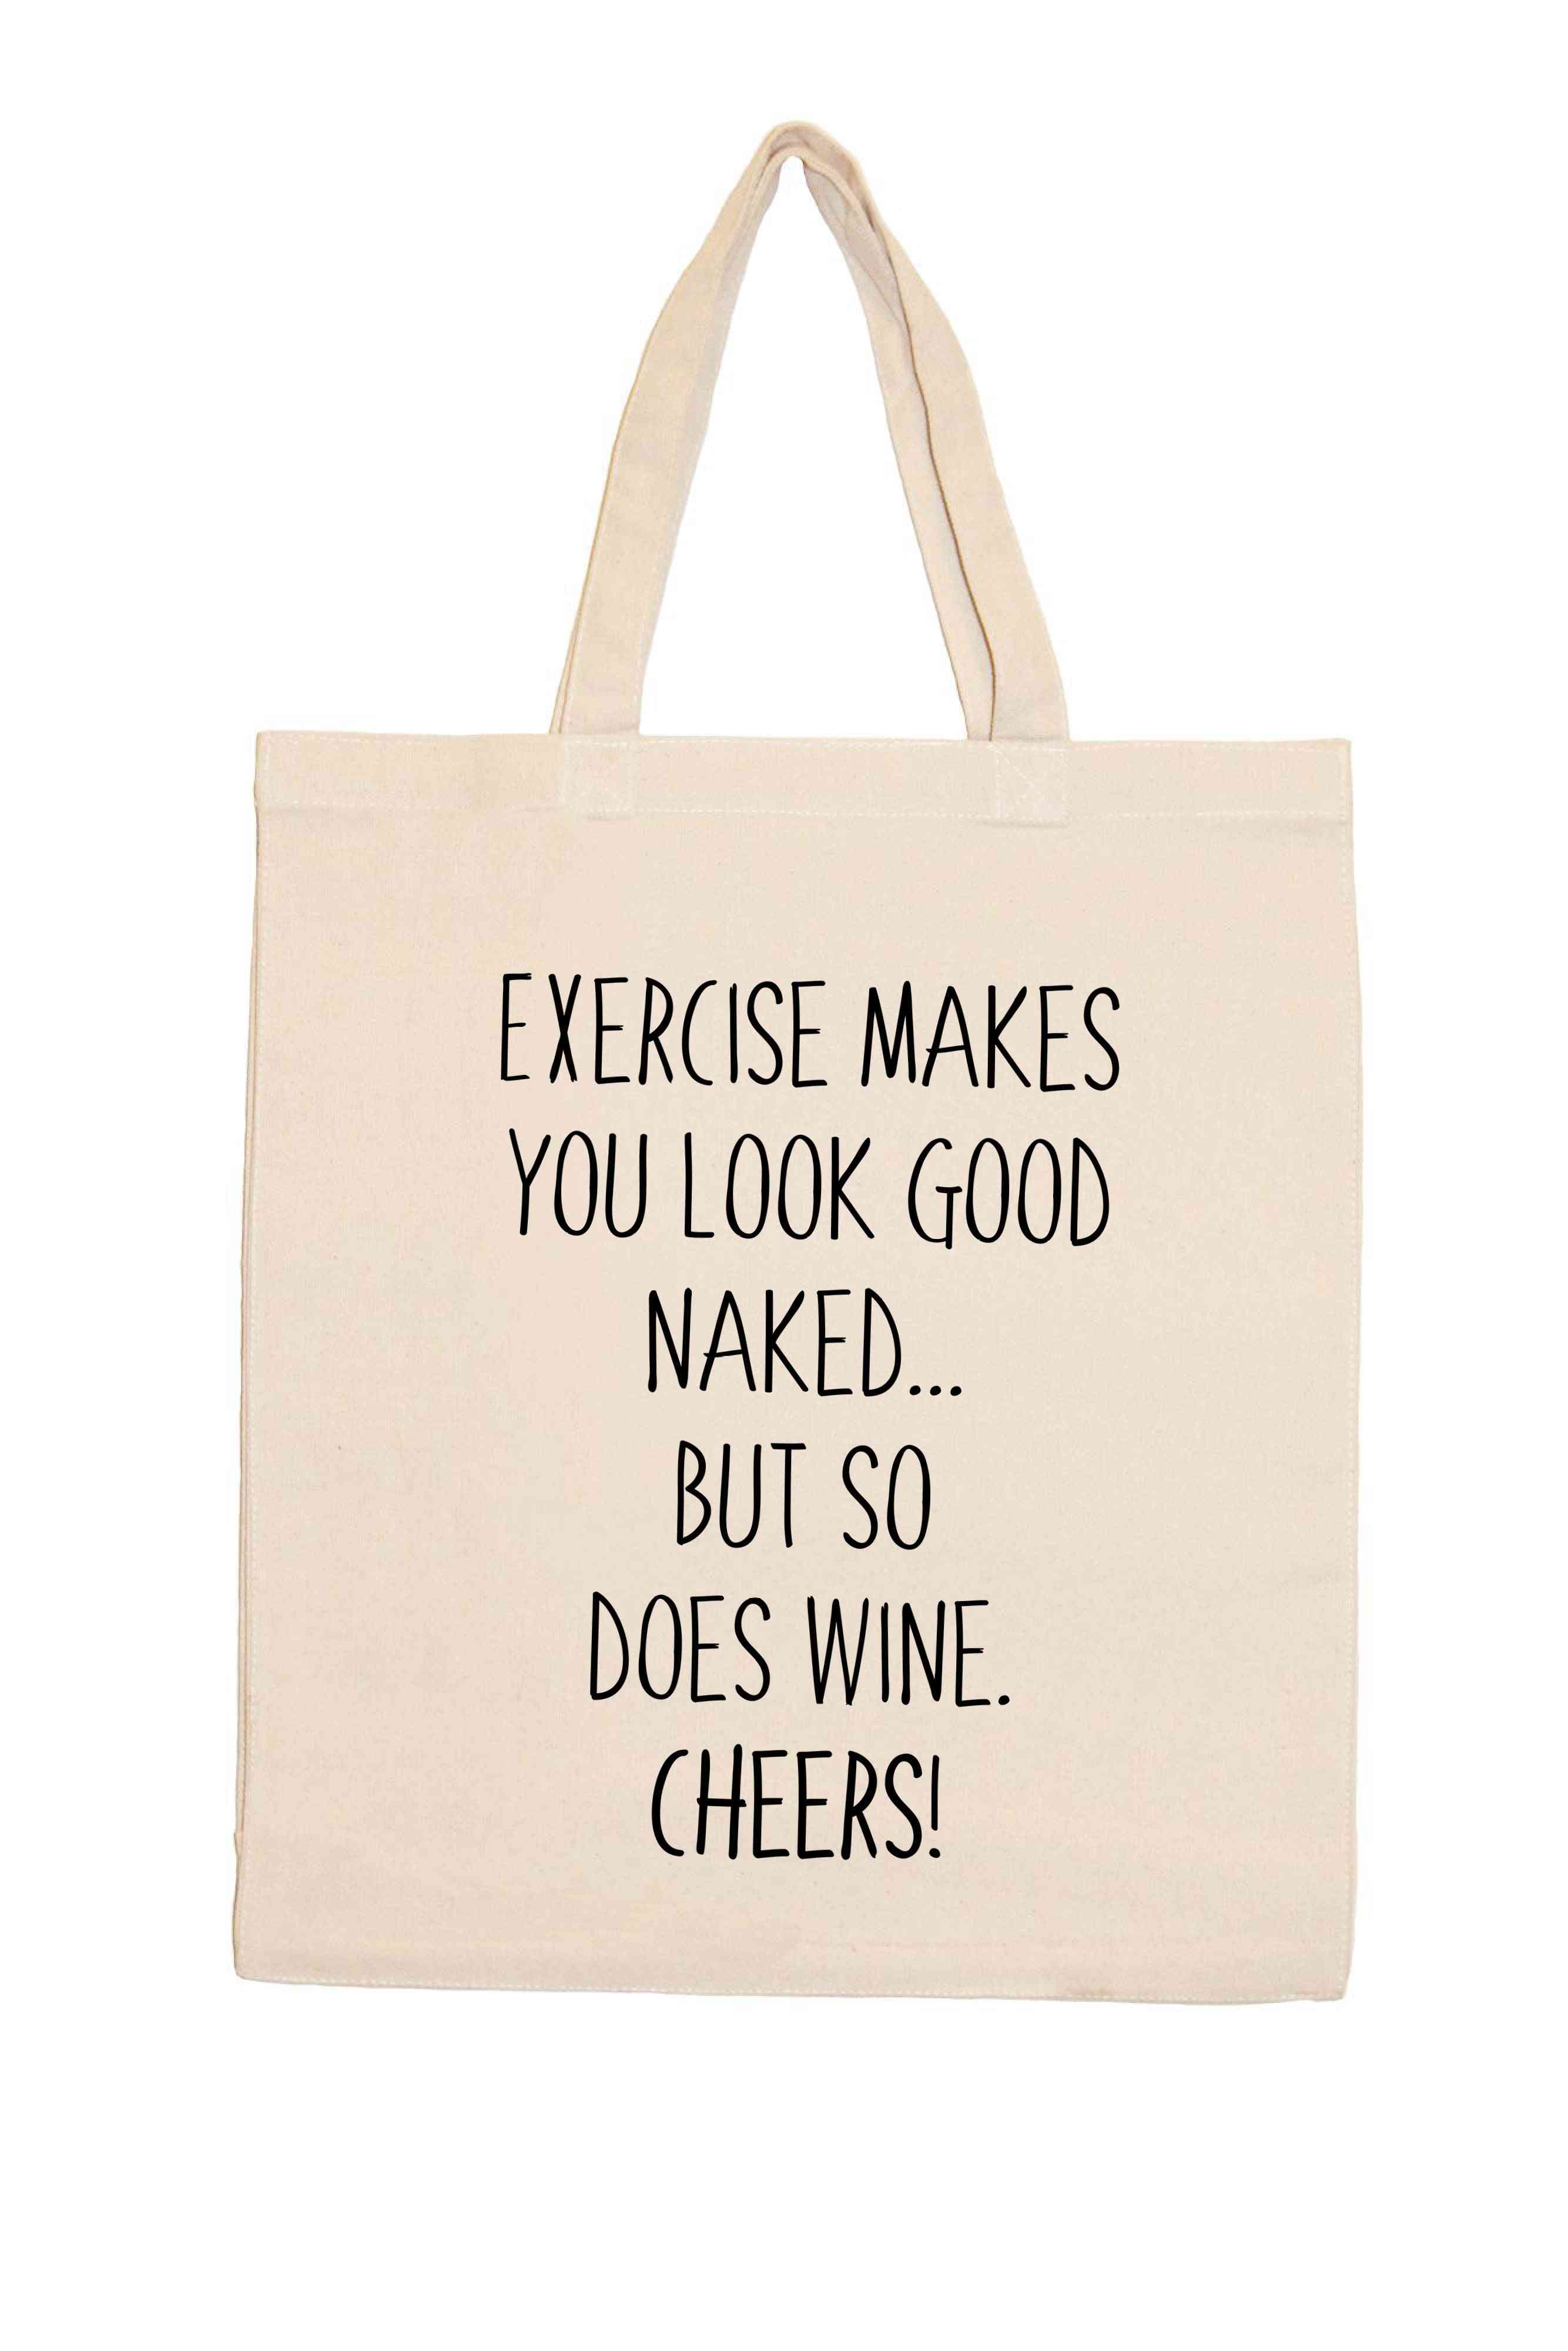 L'esercizio fisico ti fa stare bene nudo, ma anche il vino. Saluti!